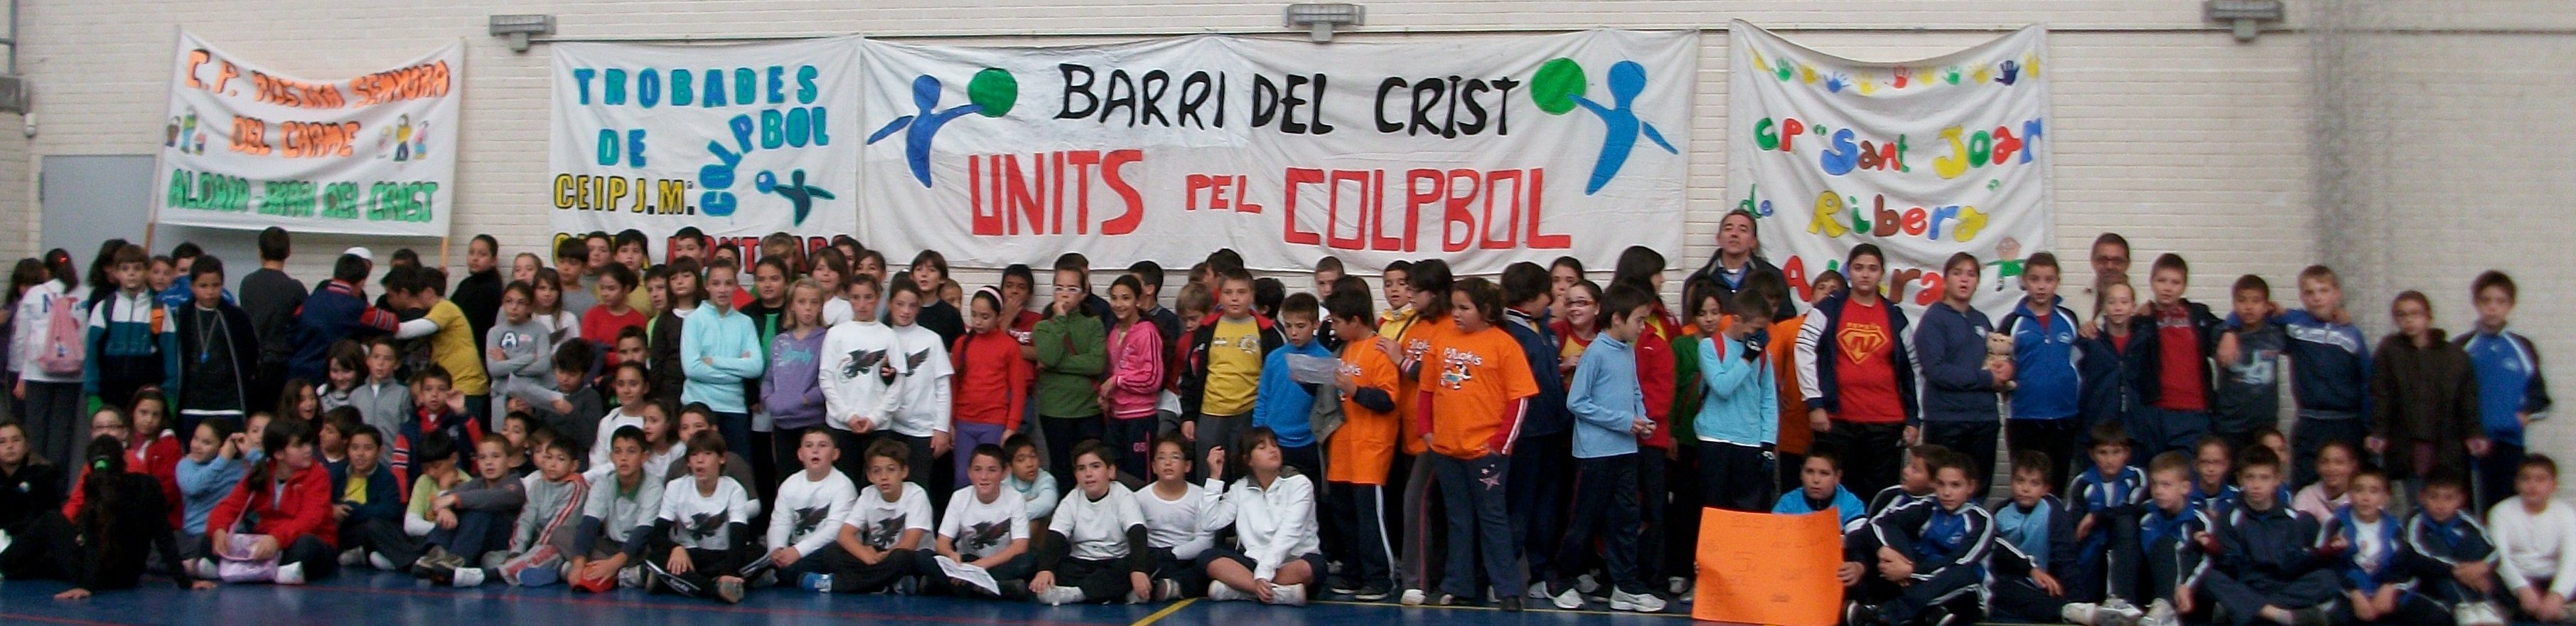 El Barri del Crist, Montcada i Alfara varen obrir la lliga 2010-2011